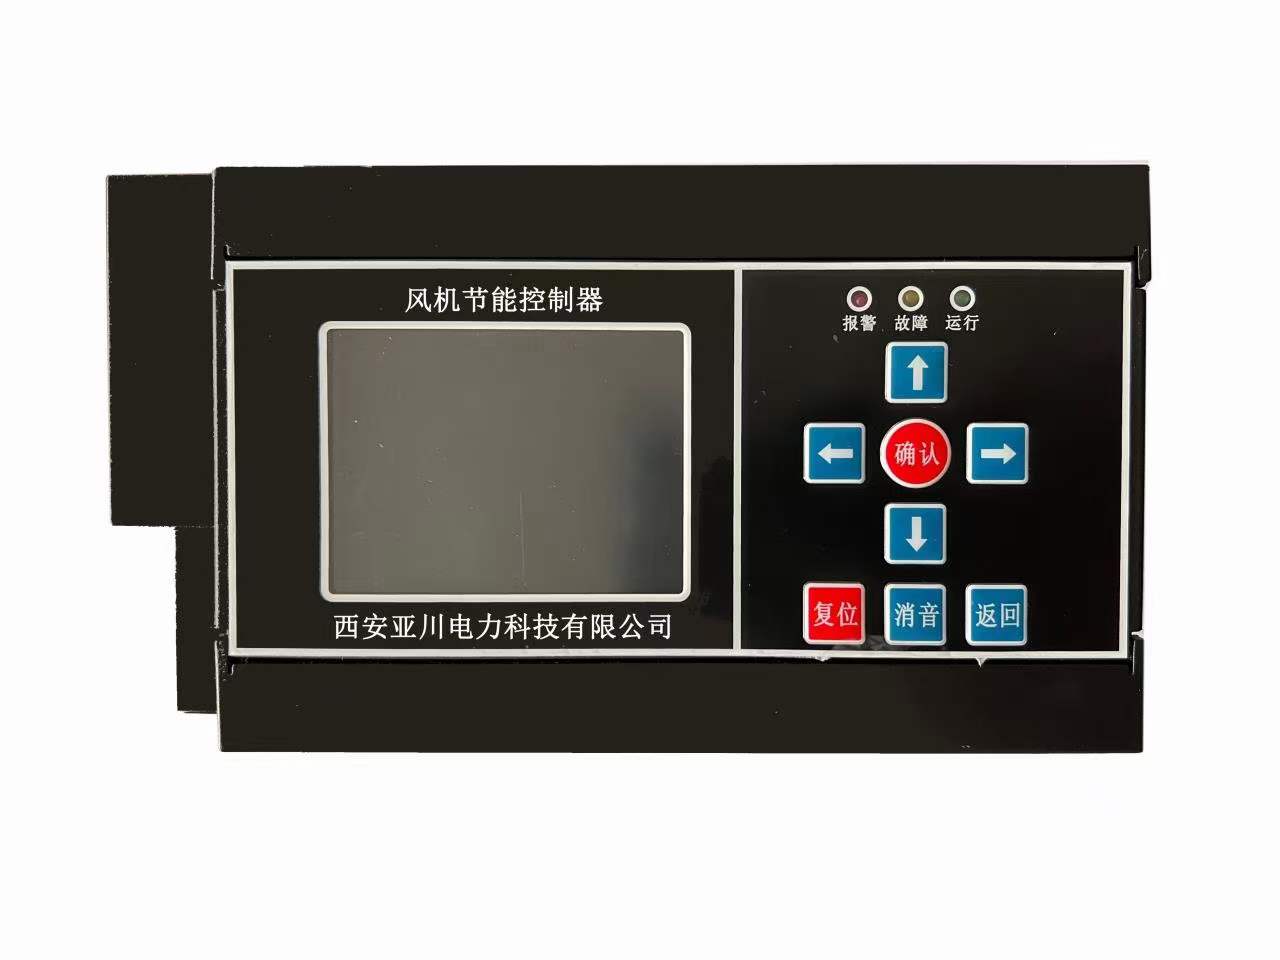 布线指导ECS-7000MZK 冷热源集控器功能及参数说明